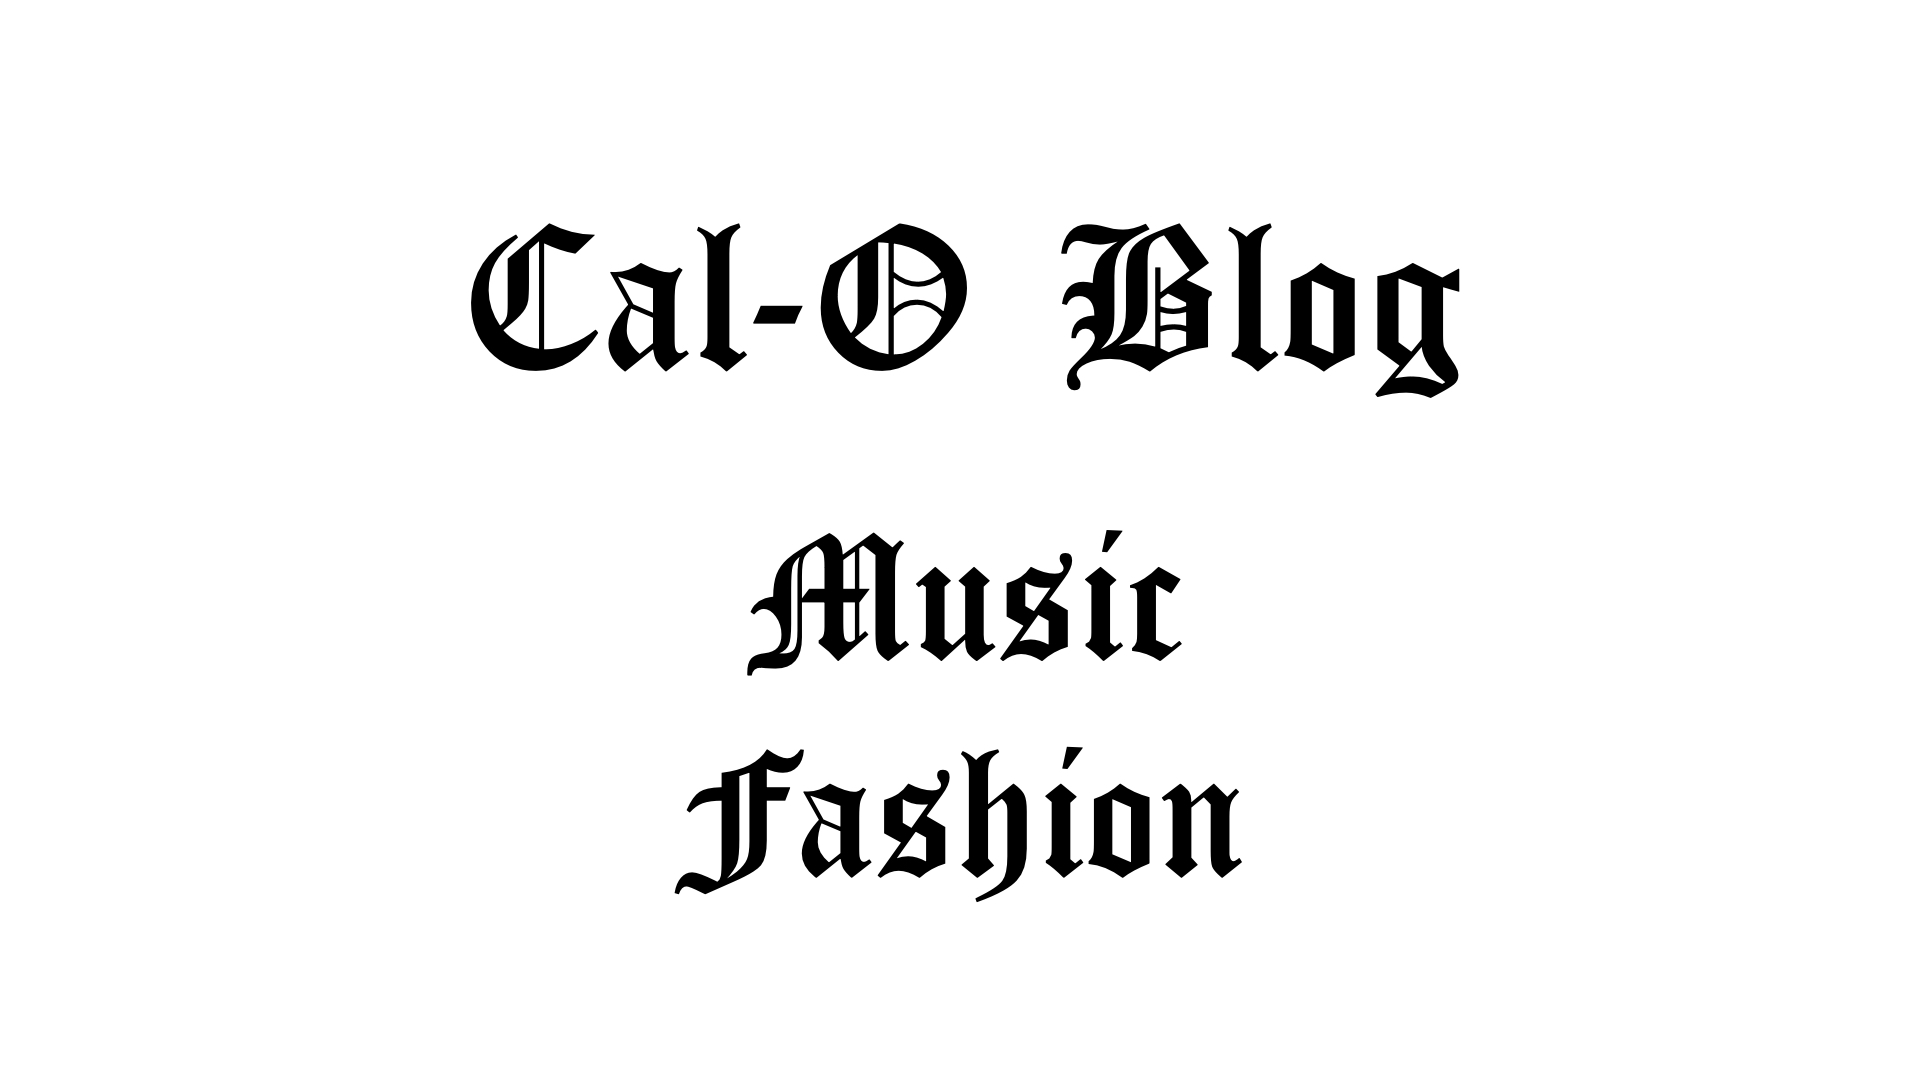 Cal-O Blog